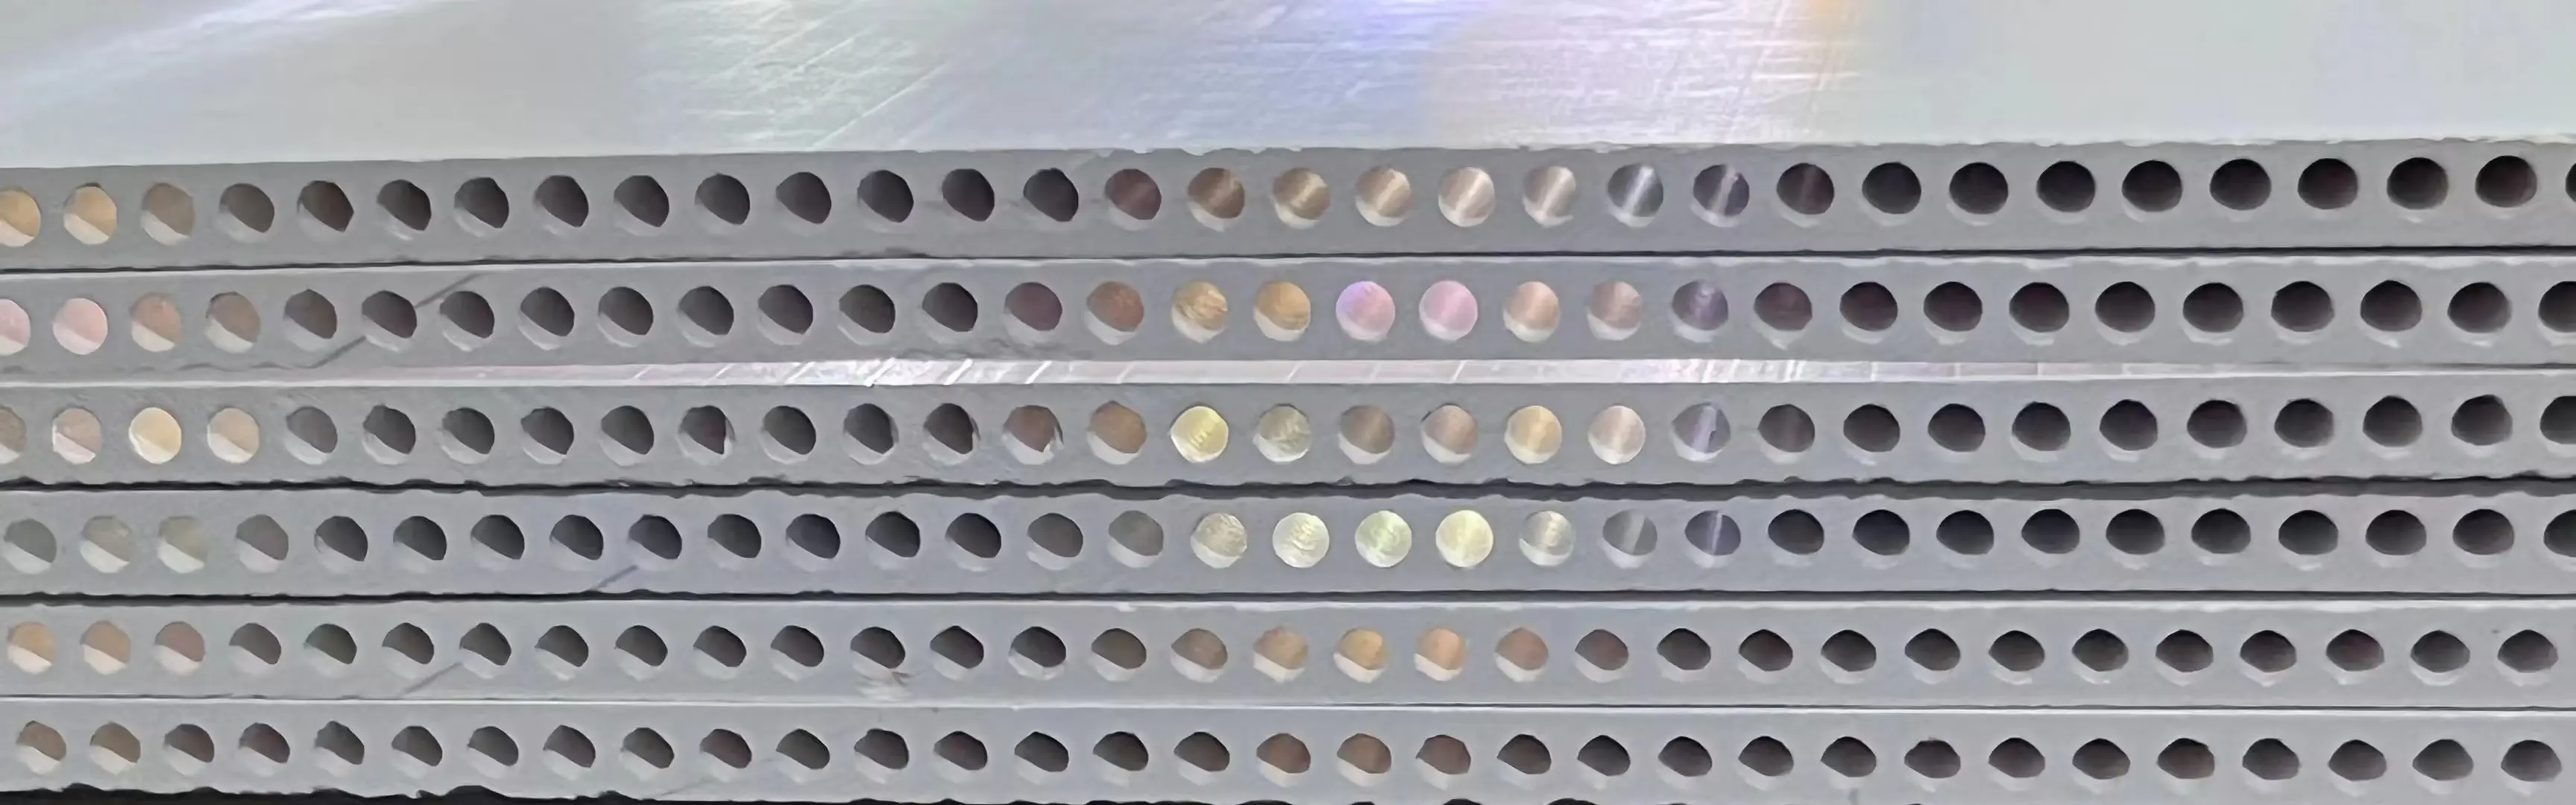 Hình chữ nhật nhôm trioxide màng bioreactor cho các trang trại gốm siêu lọc màng lọc trắng xử lý nước